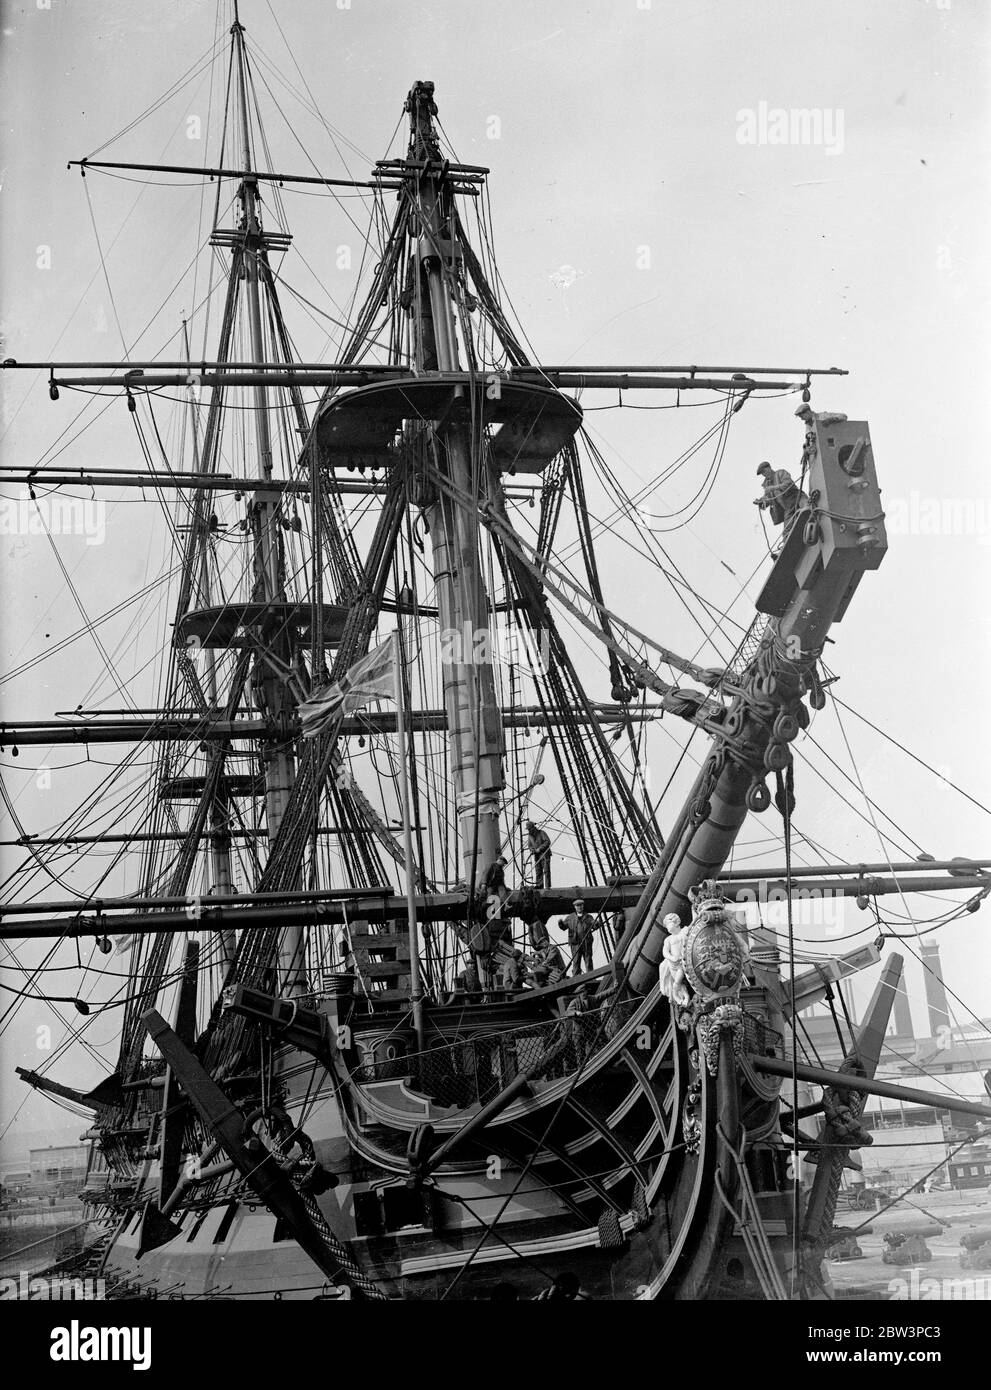 Entfernen ' Sieg ' s ' bowsprit in Portsmouth, kann Schlacht von Trafalgar gesehen haben. H M S Victory, Nelson ' s berühmten Flaggschiff, wird Reparaturen an Portsmouth Dockyard. Der Geist ist verrottet und wird entfernt. Dazu ist es notwendig, den Figurkopf abzuziehen. Das letzte Mal, dass etwas getan wurde, um den Geist bowSpirit war in 1859, wenn es refitted. Es gibt keine Aufzeichnung des Alters der bowspirit , aber es wird angenommen, entweder in 1805, dem Jahr des Trafalgar ausgestattet worden . Das Schiff wurde 1765 gebaut. Foto zeigt, Entfernen der Victory ' s Bogengeist in Portsmouth Dockyard. Th Stockfoto